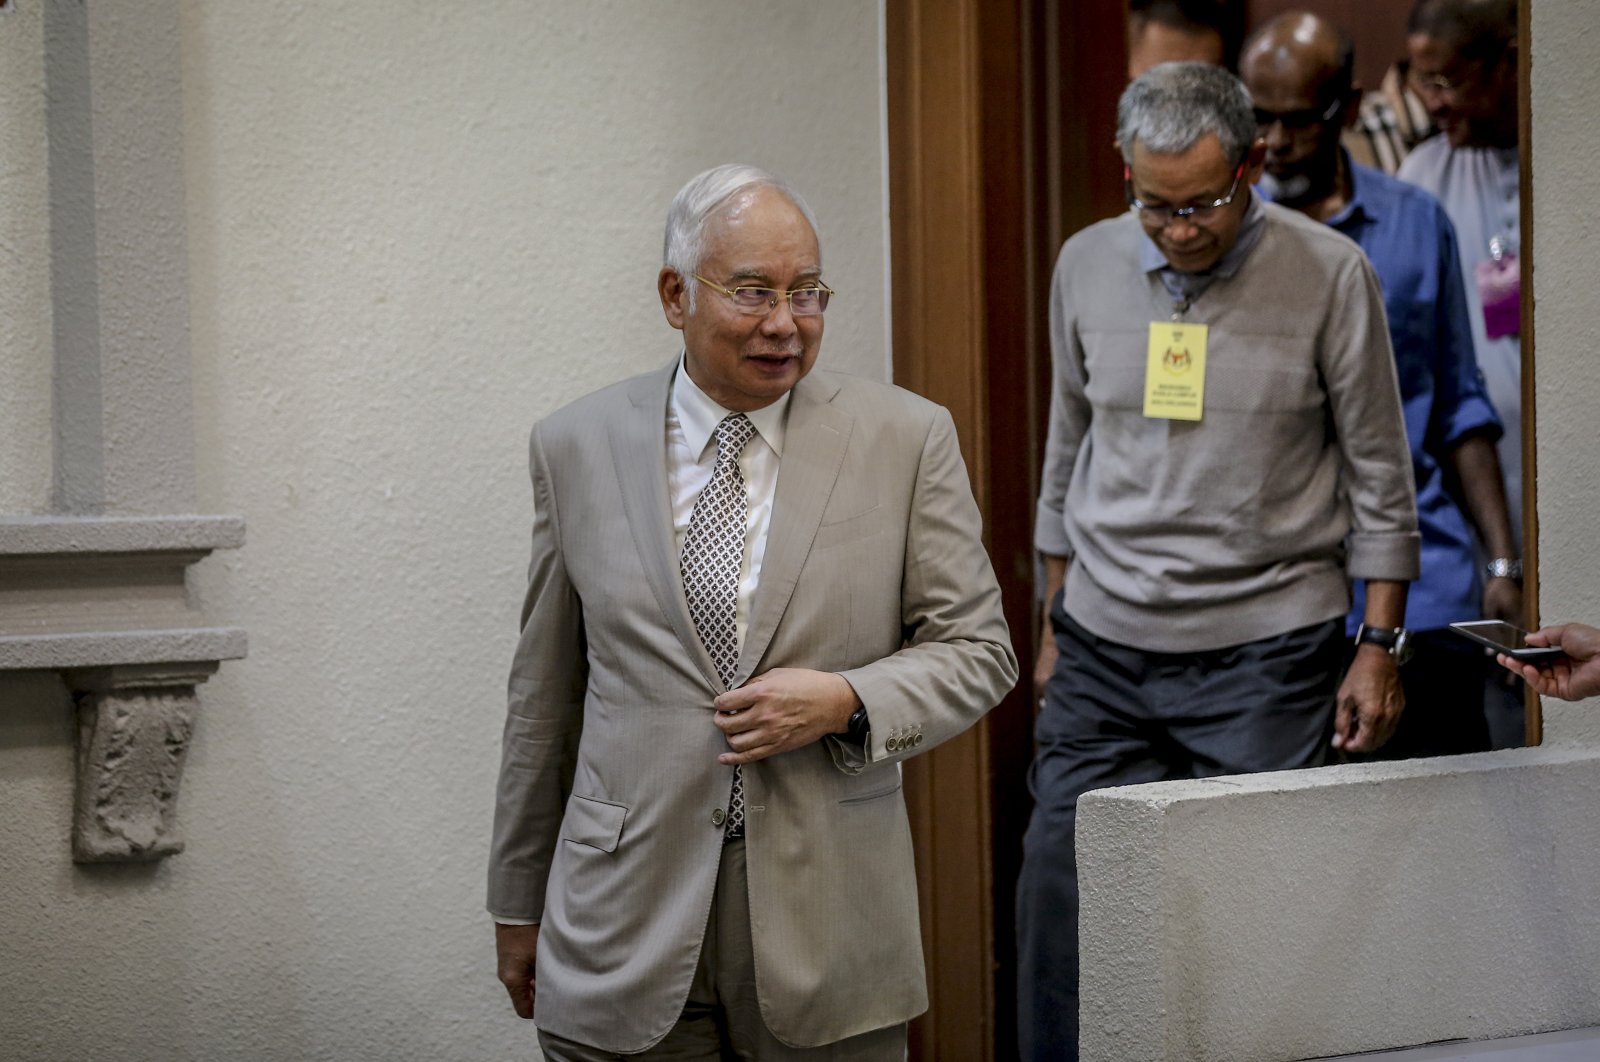 Banding terakhir mantan PM Malaysia Najib gagal dalam vonis korupsi